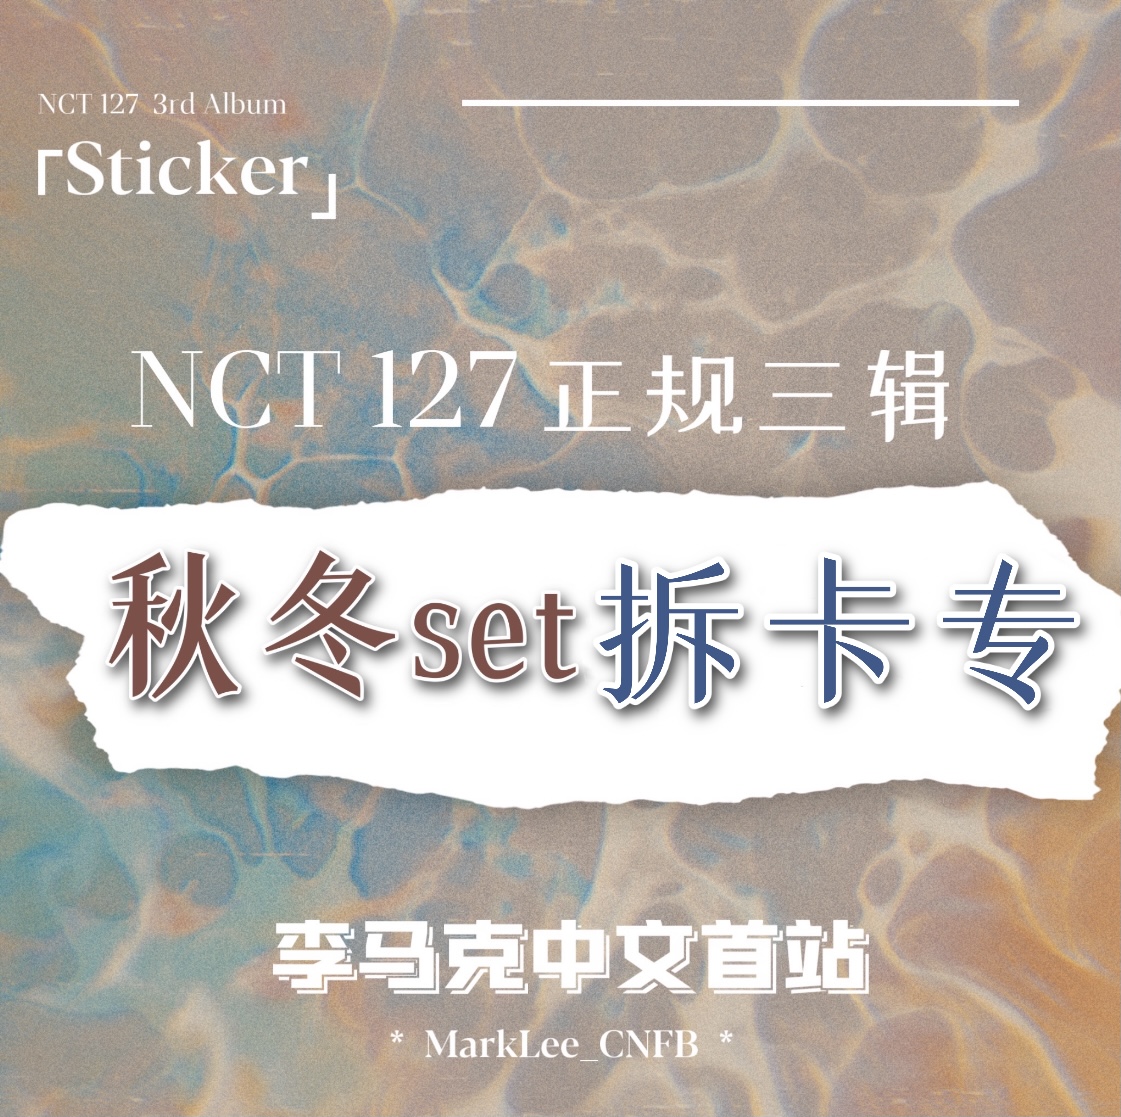 [拆卡专  秋冬set拆卡] NCT 127 - 正规3辑 [Sticker] (Sticker Ver.) 李马克中文首站